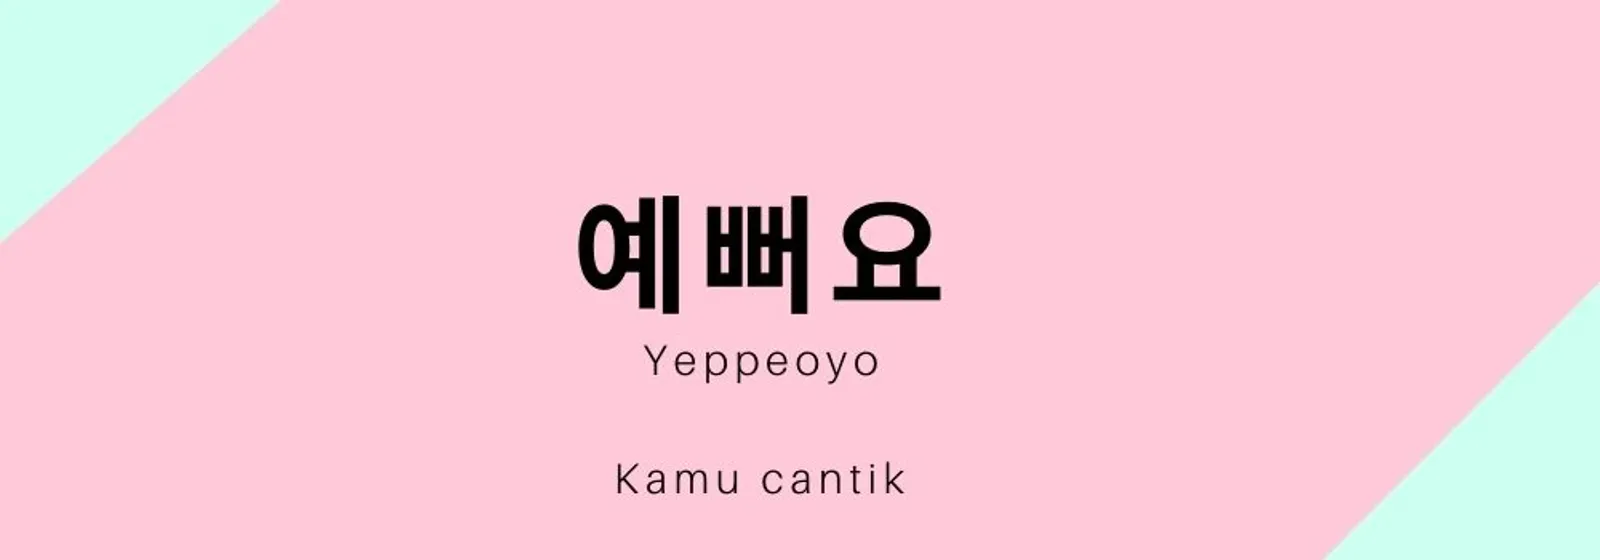 10 Kata-Kata Untuk Memuji dalam Bahasa Korea, Coba Yuk!